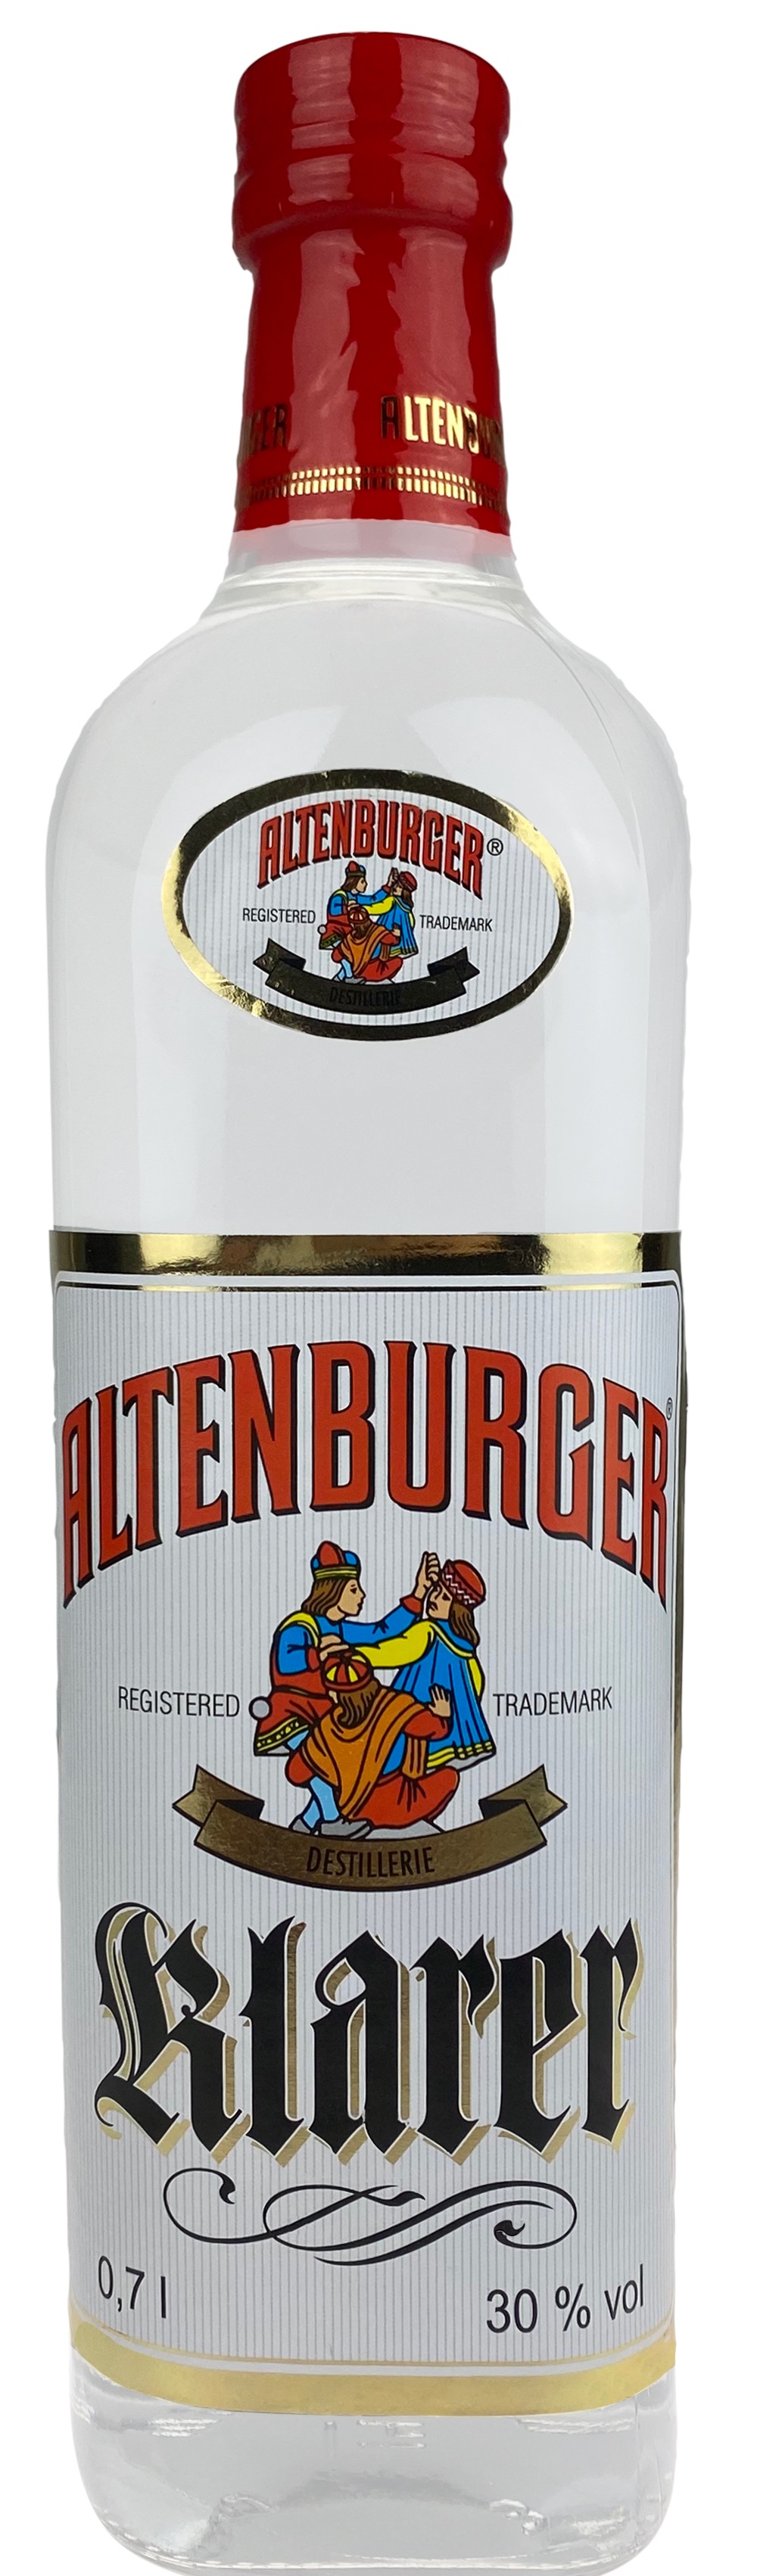 Altenburger Klarer 30%vol.